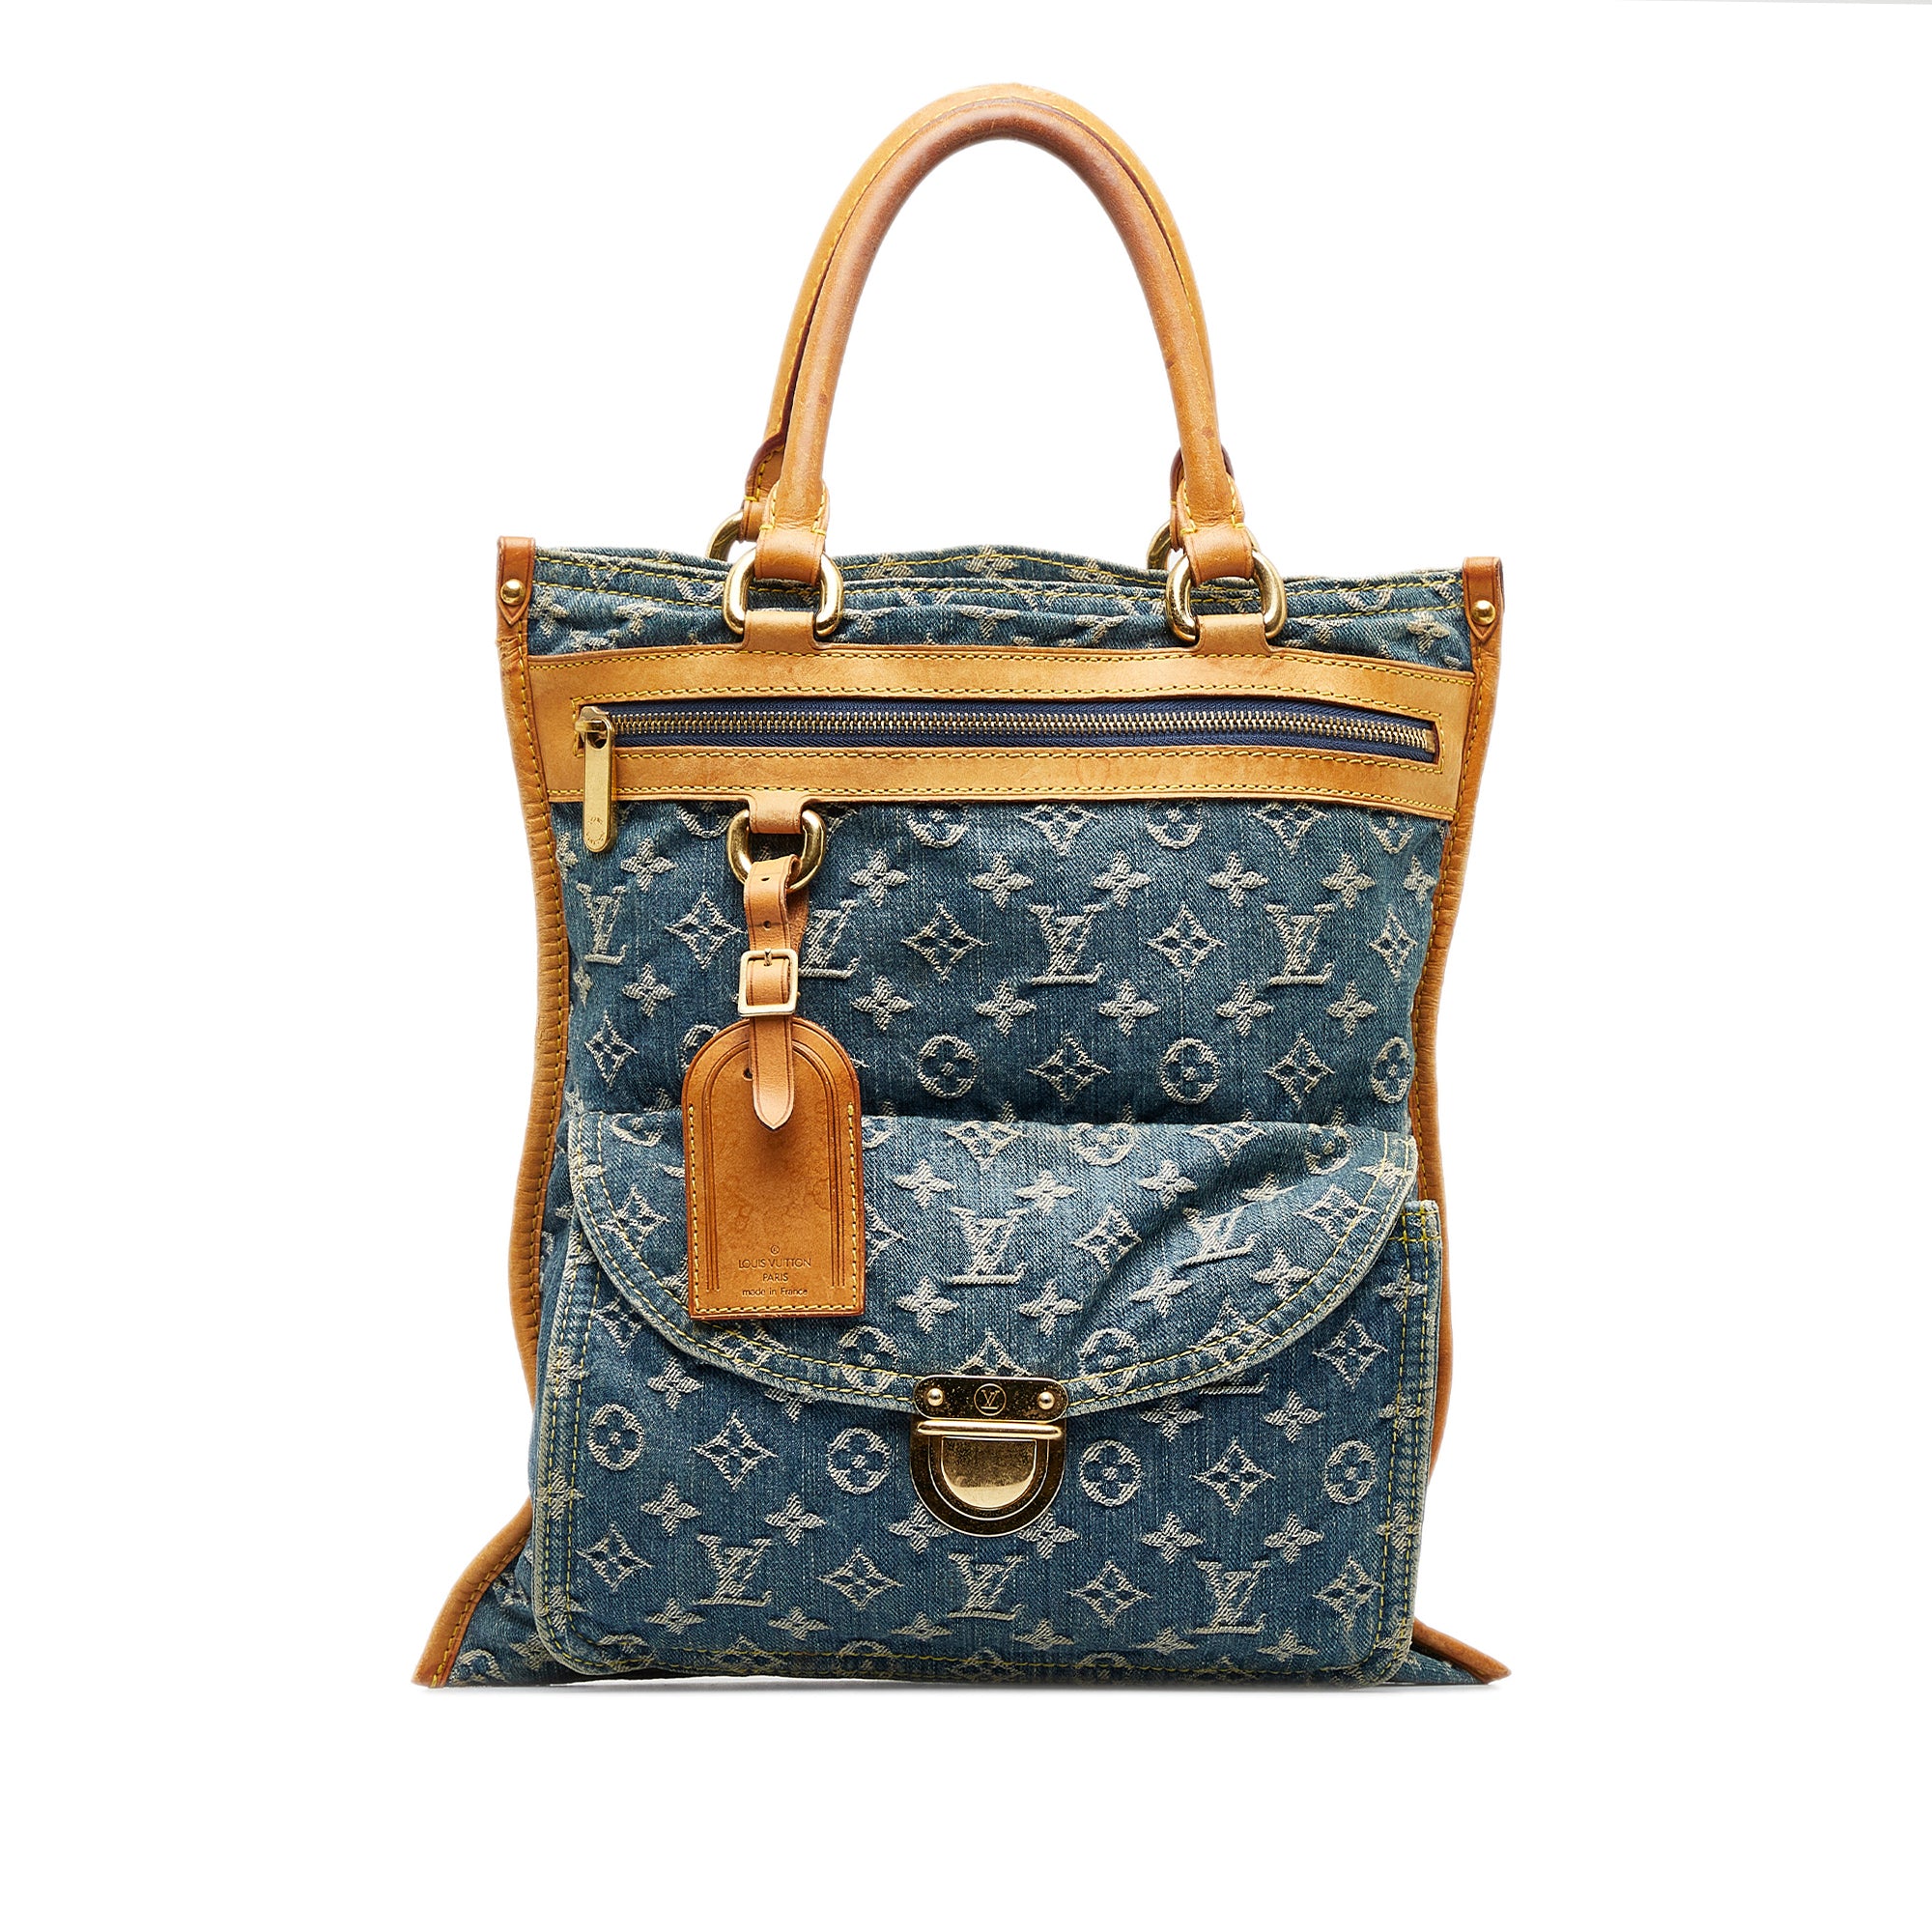 Louis Vuitton - Authenticated Pleaty Handbag - Denim - Jeans Blue for Women, Good Condition